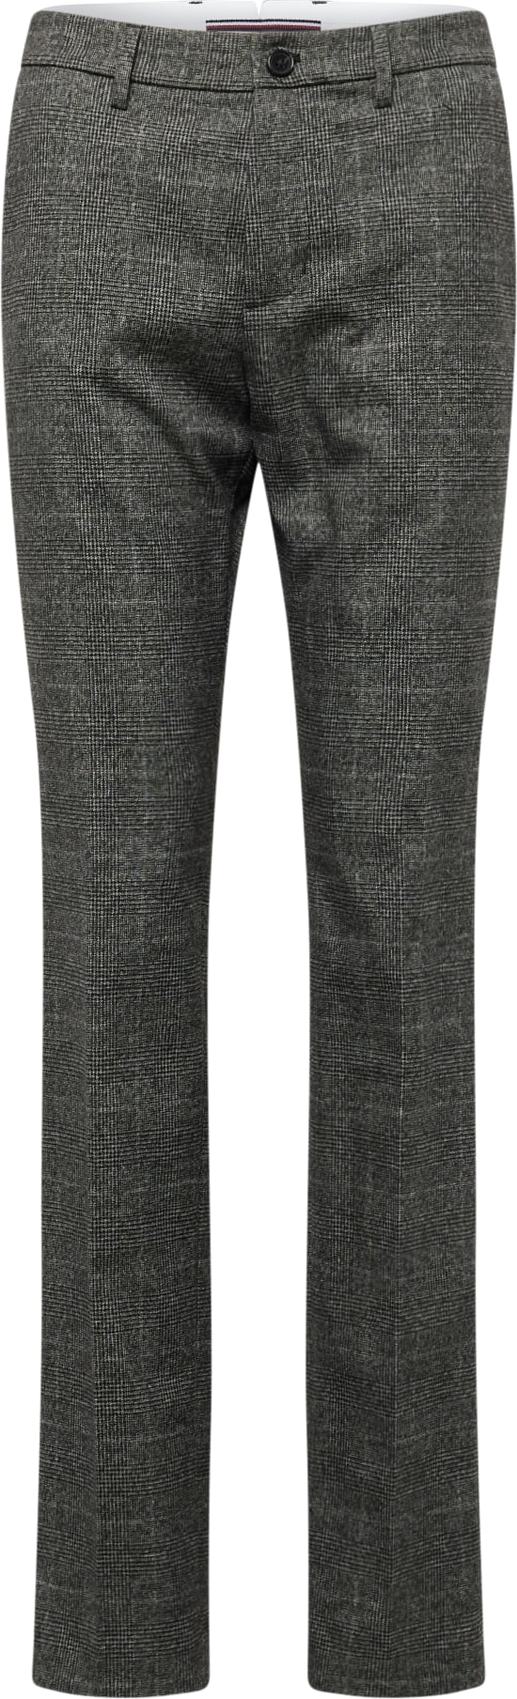 Kalhoty s puky 'Denton' Tommy Hilfiger šedý melír / černá